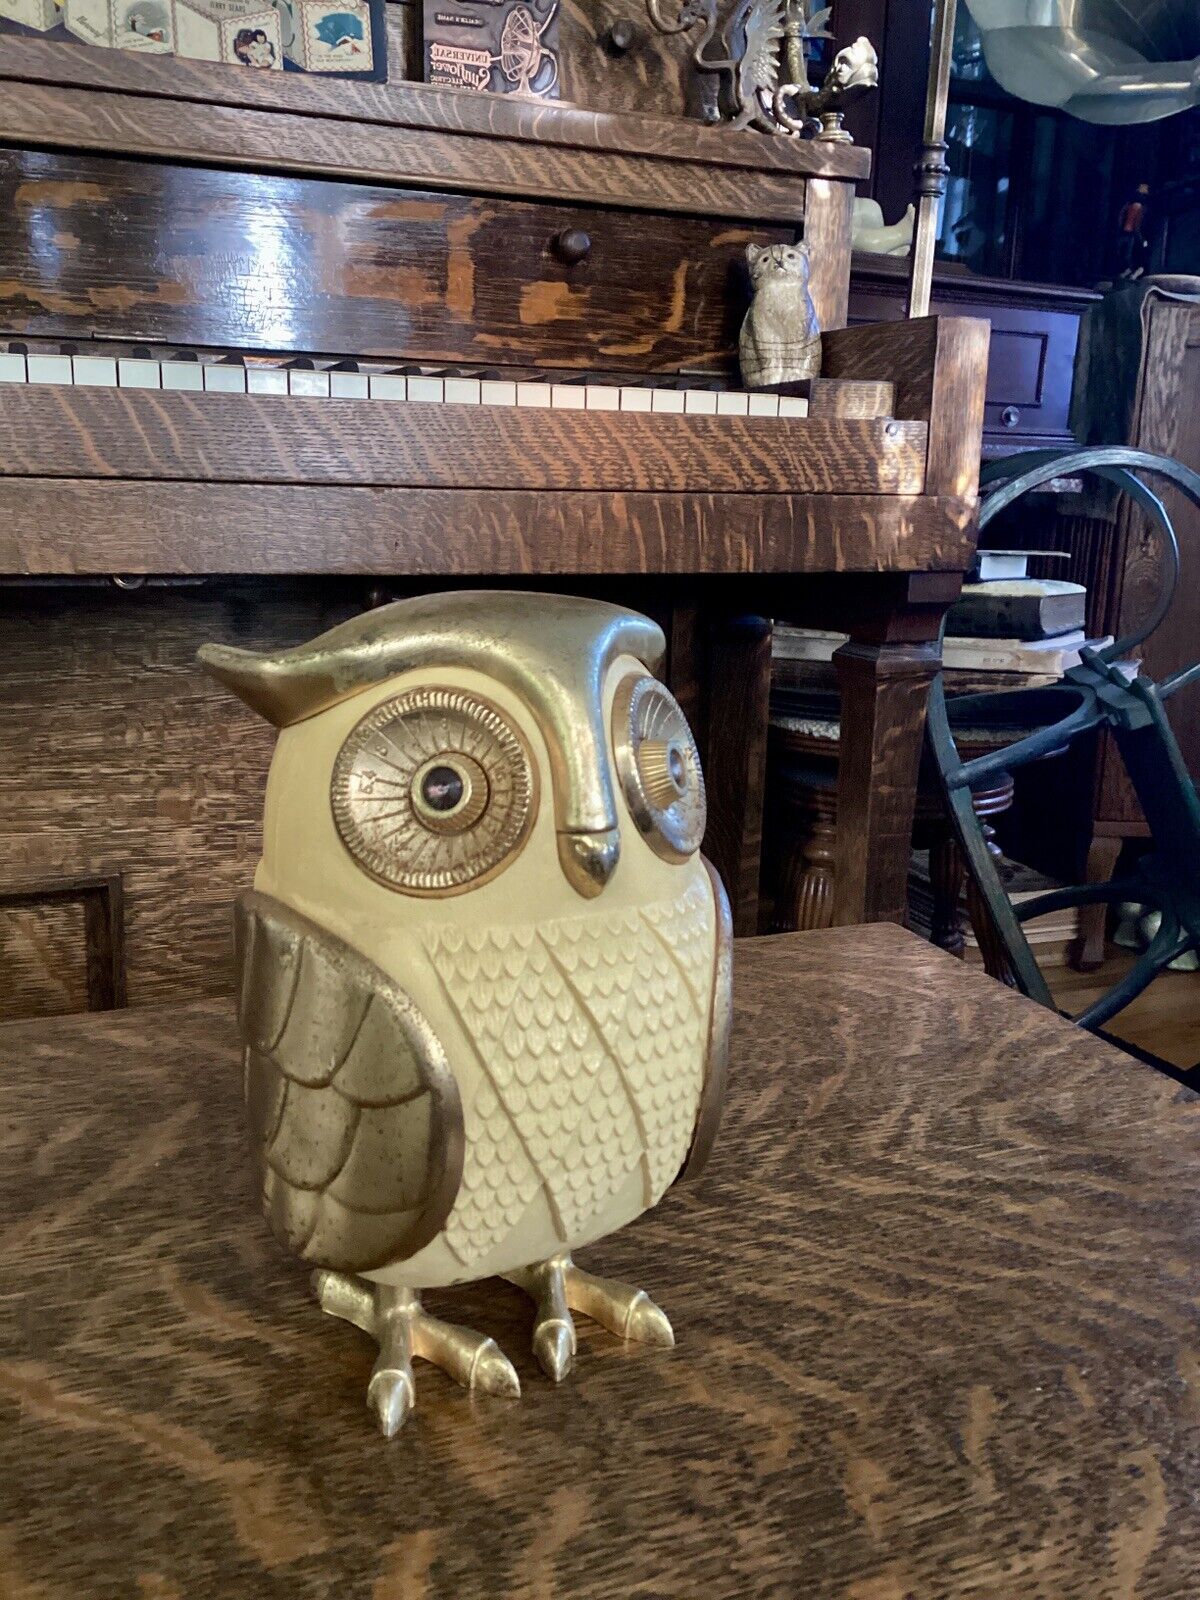 Vintage Midnight Owl 